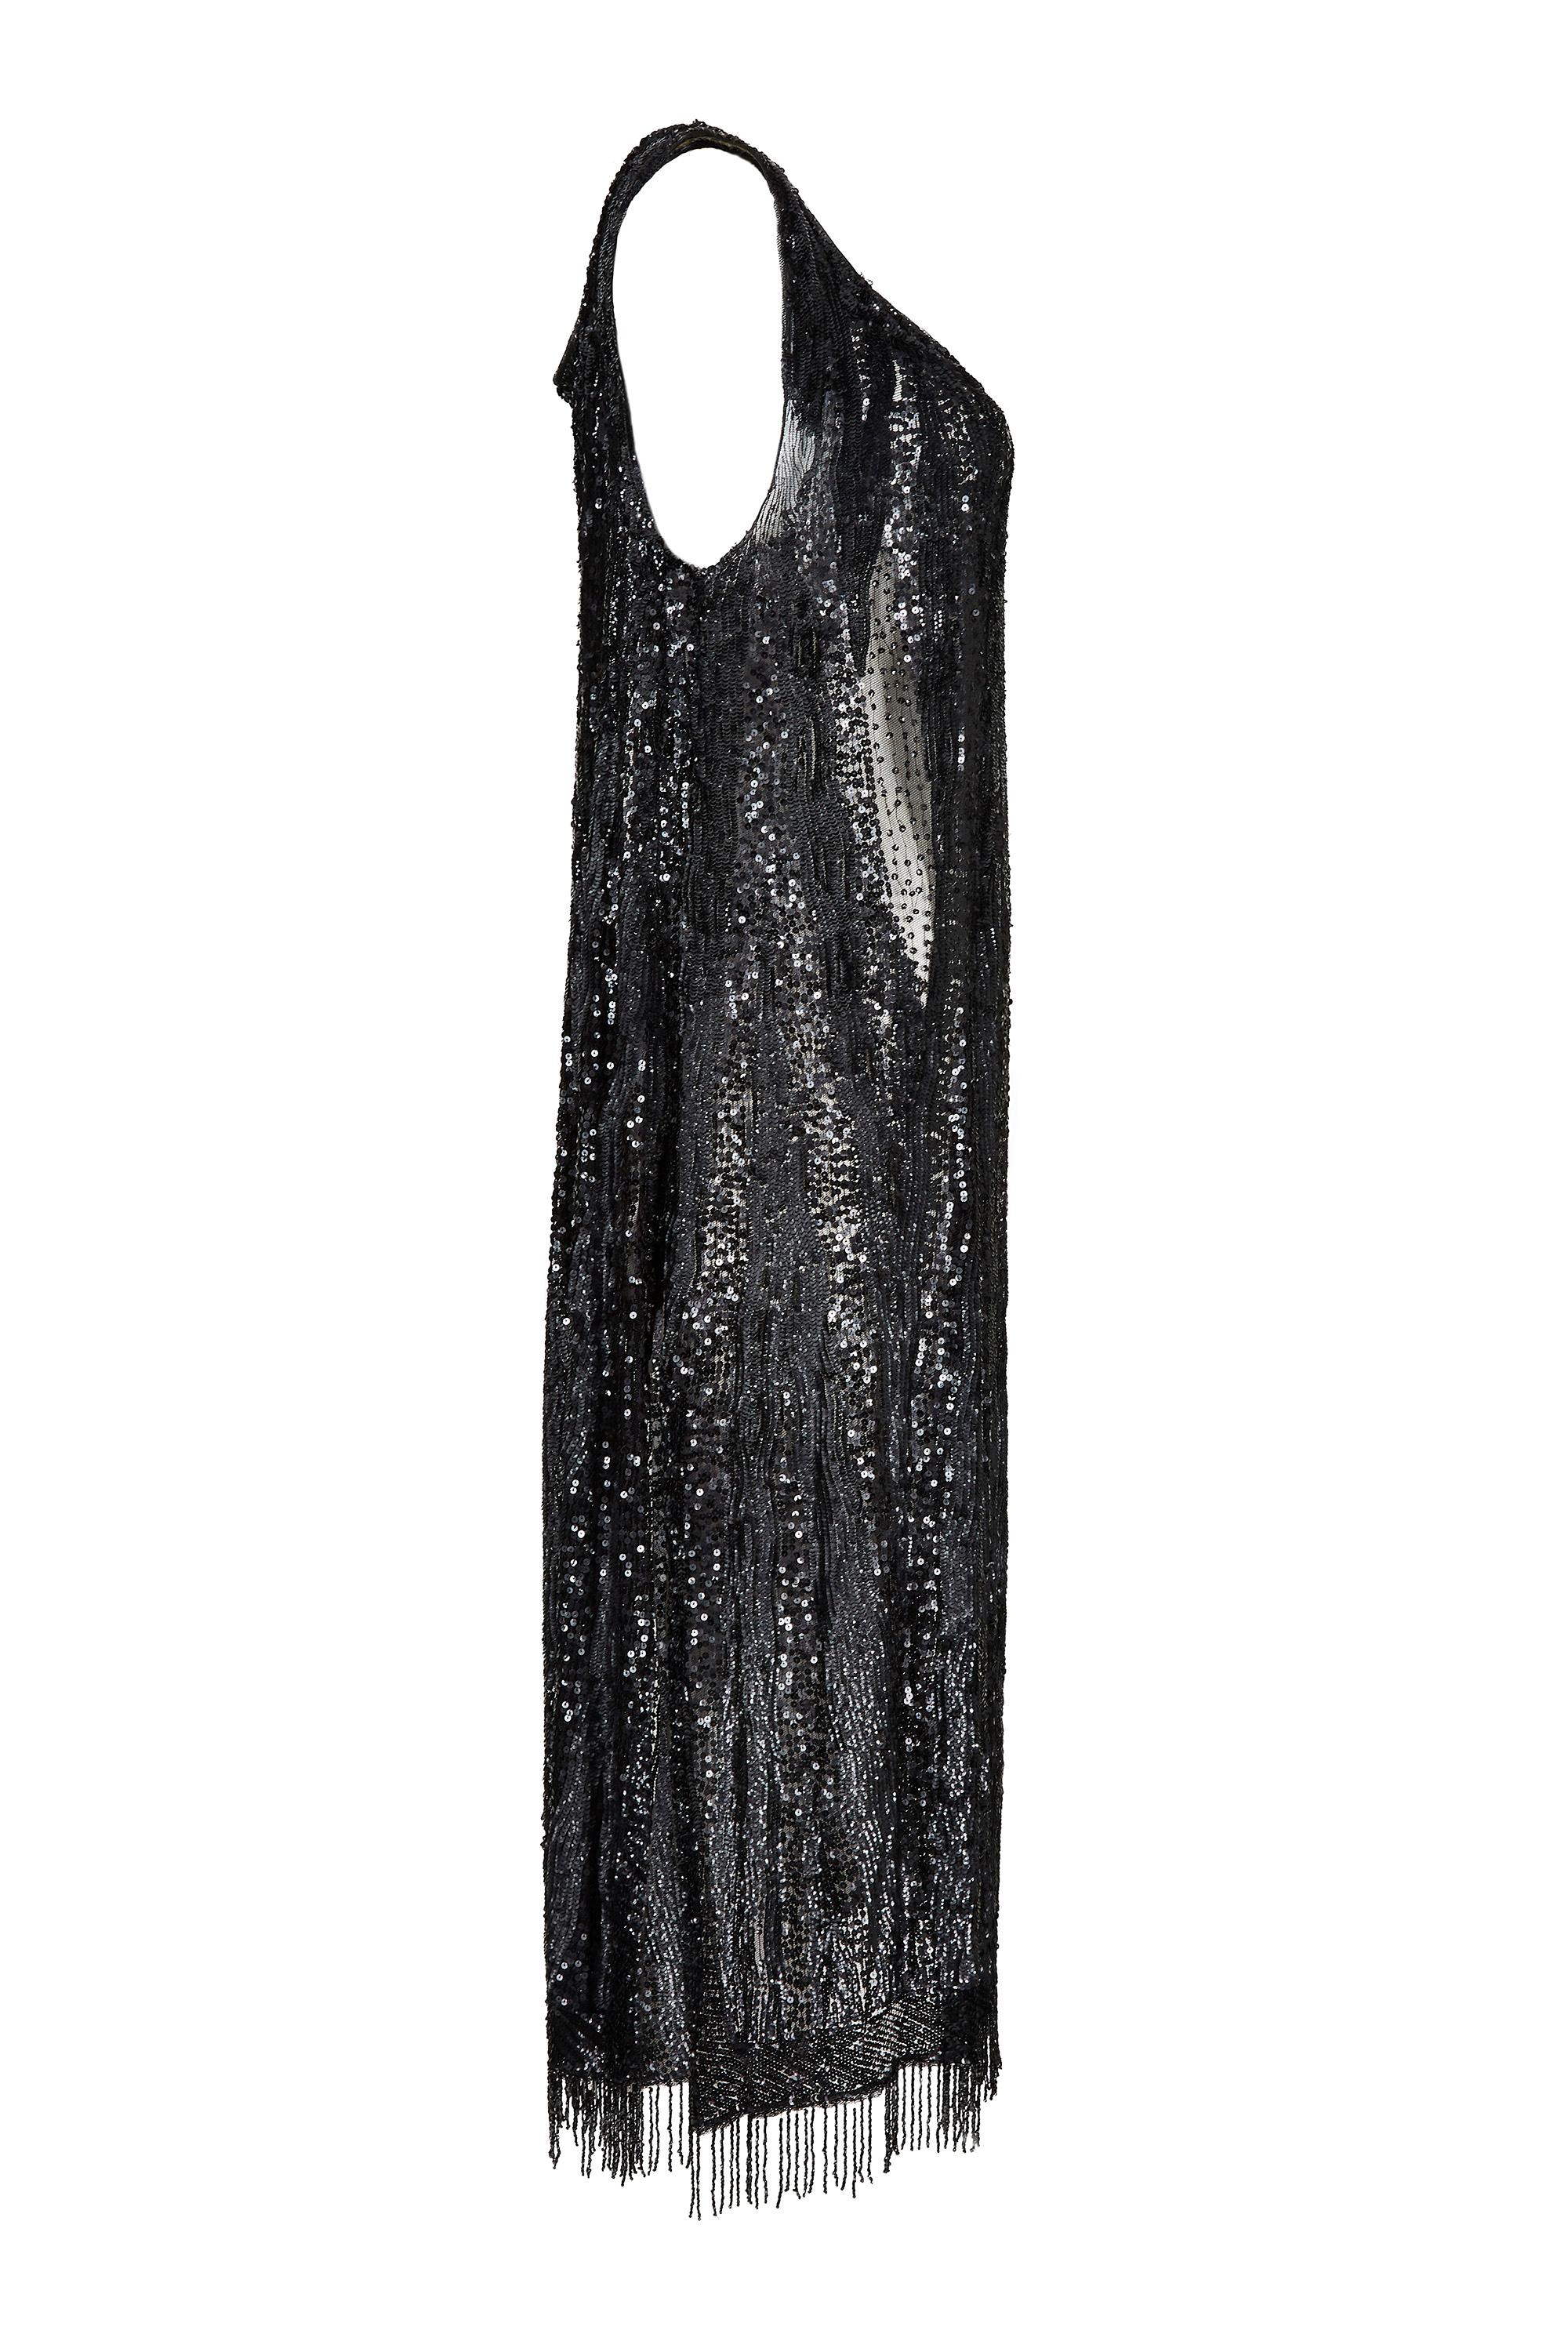 Cette petite robe noire des années 1920 est un modèle haute couture non étiqueté, entièrement pailleté et en excellent état. Taillée dans une silhouette flapper intemporelle, cette exquise robe tabard présente une douce encolure, une longueur